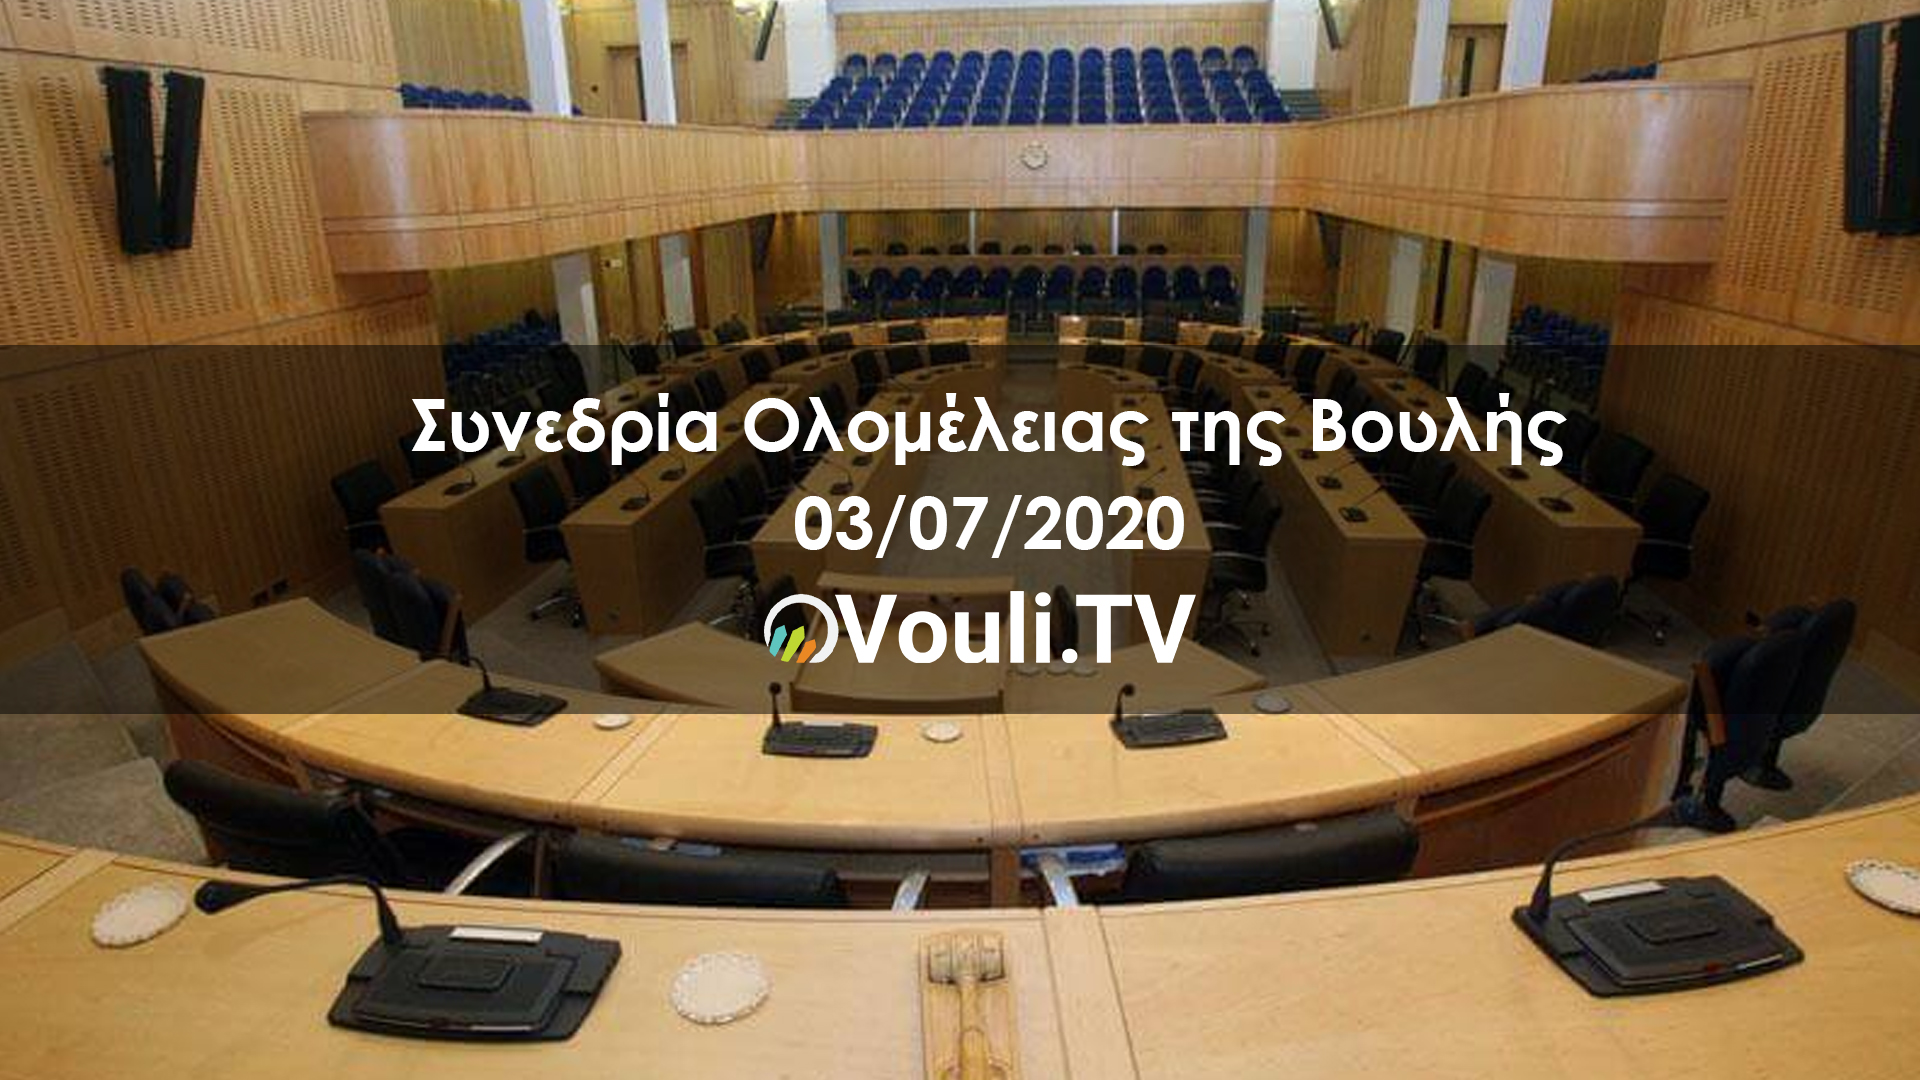 ΚΟΙΝΟΒΟΥΛΙΟ – Συνεδρία Ολομέλειας της Βουλής | 03/07/2020